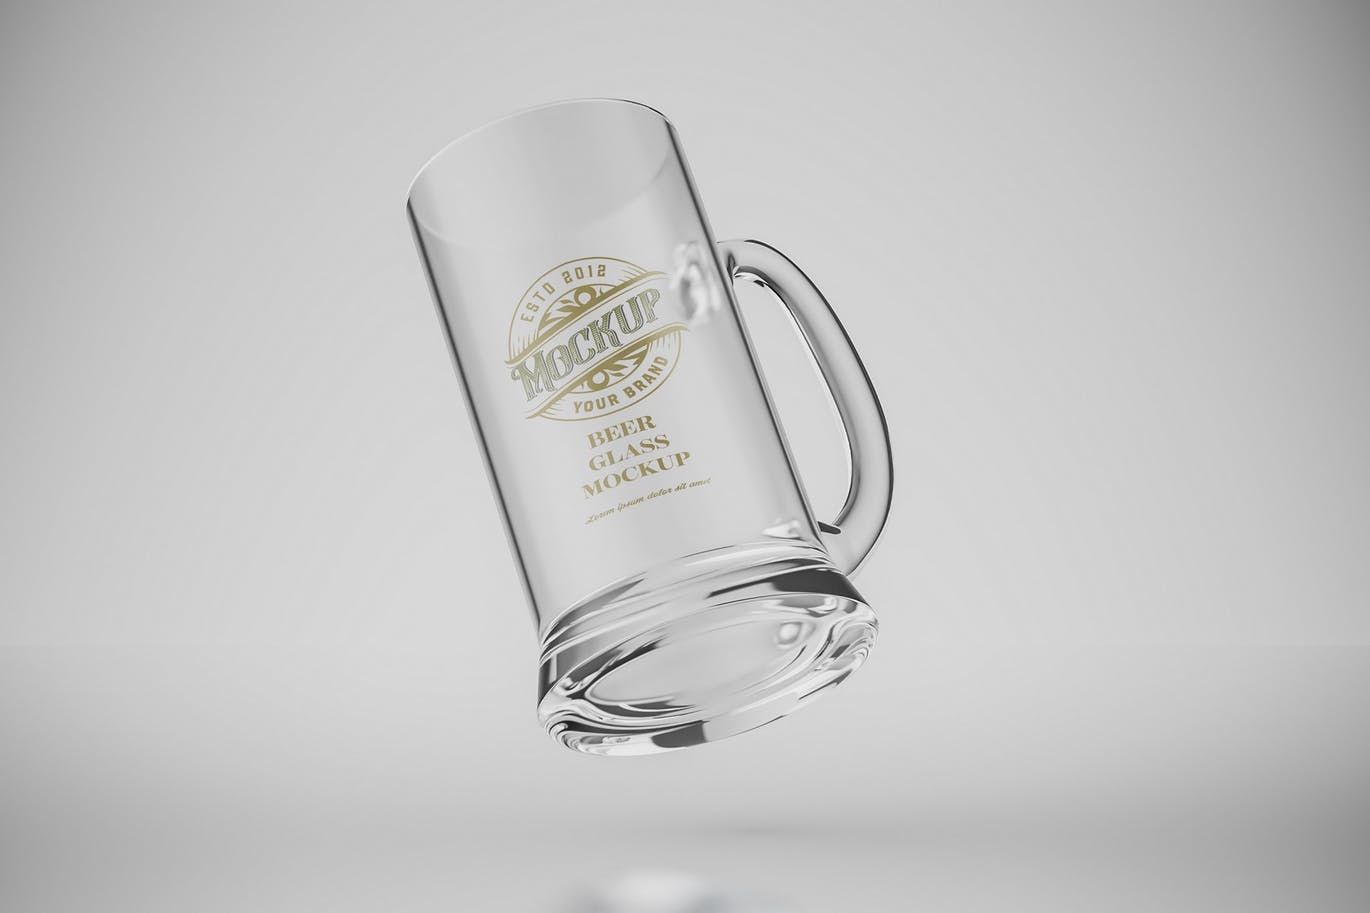 透明啤酒杯品牌Logo设计样机 (PSD)